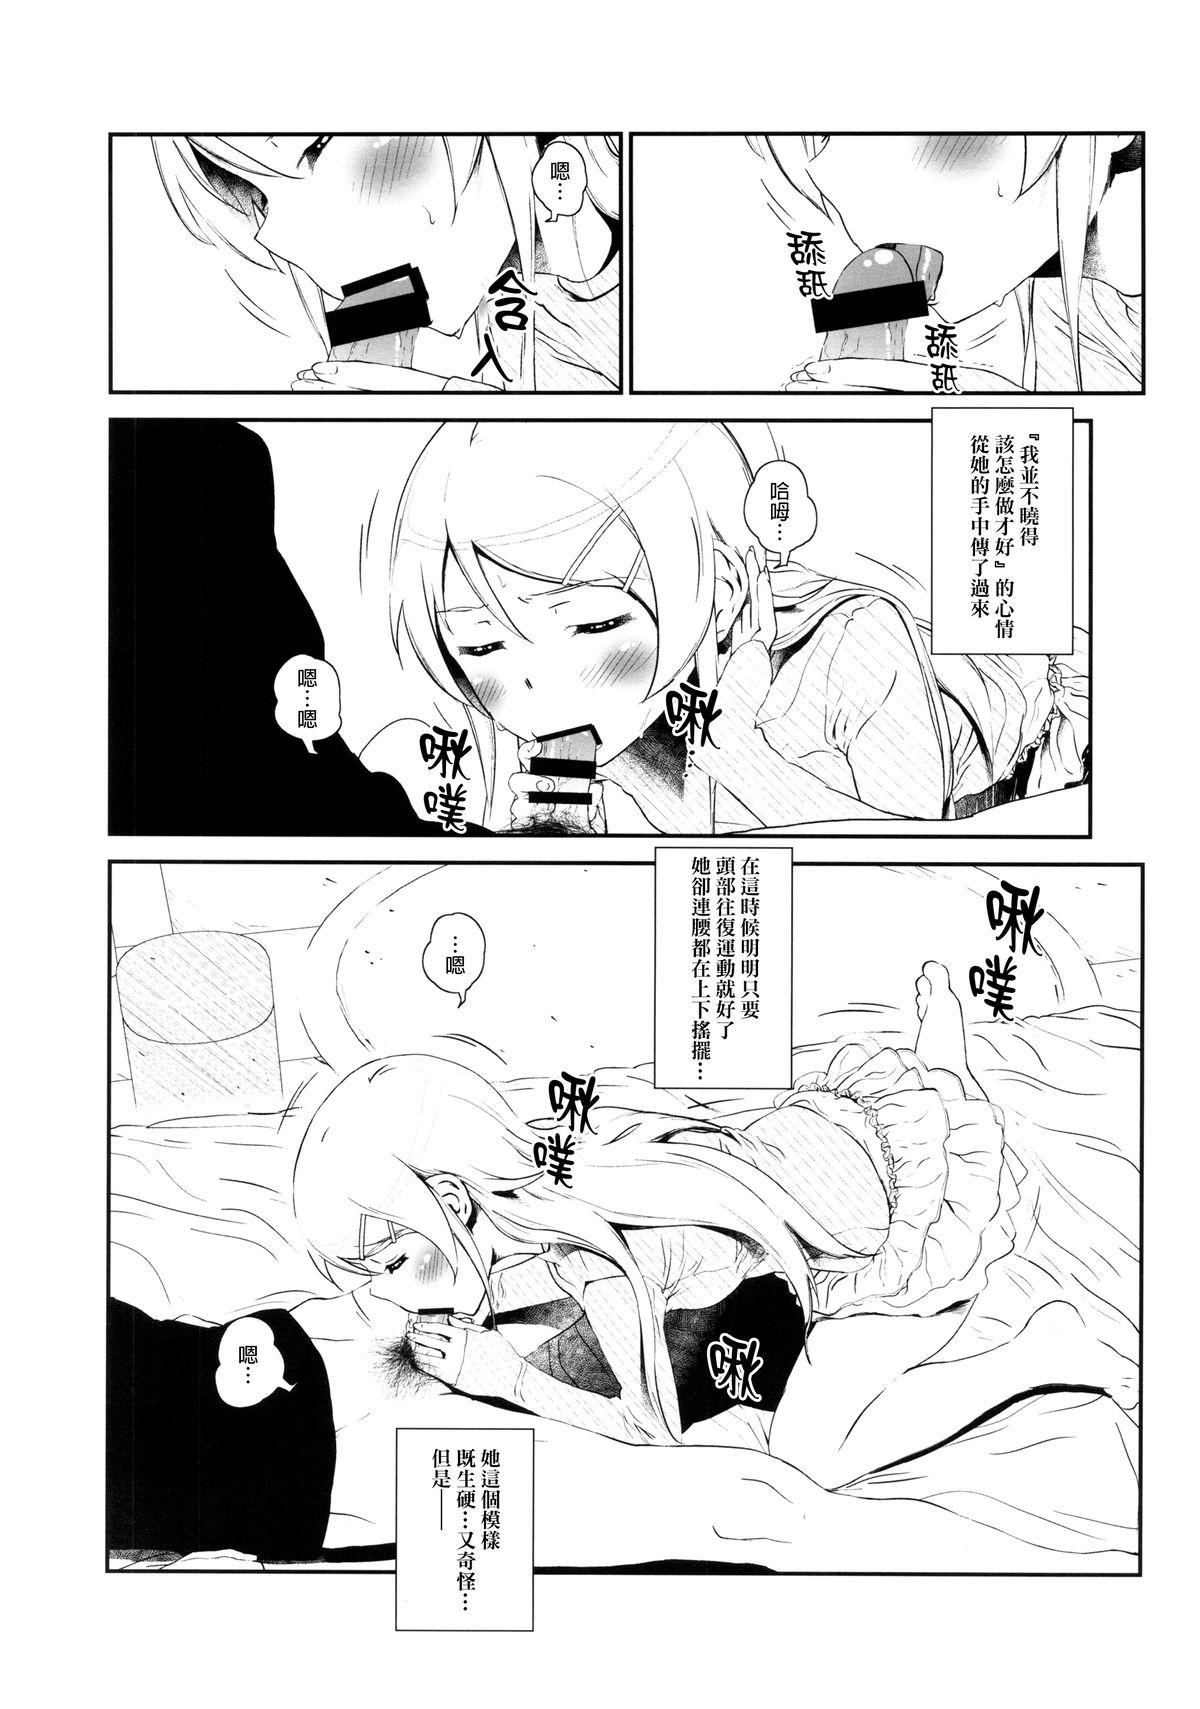 Amature Sex Hoshikuzu Namida 3 - Ore no imouto ga konna ni kawaii wake ga nai Moneytalks - Page 9